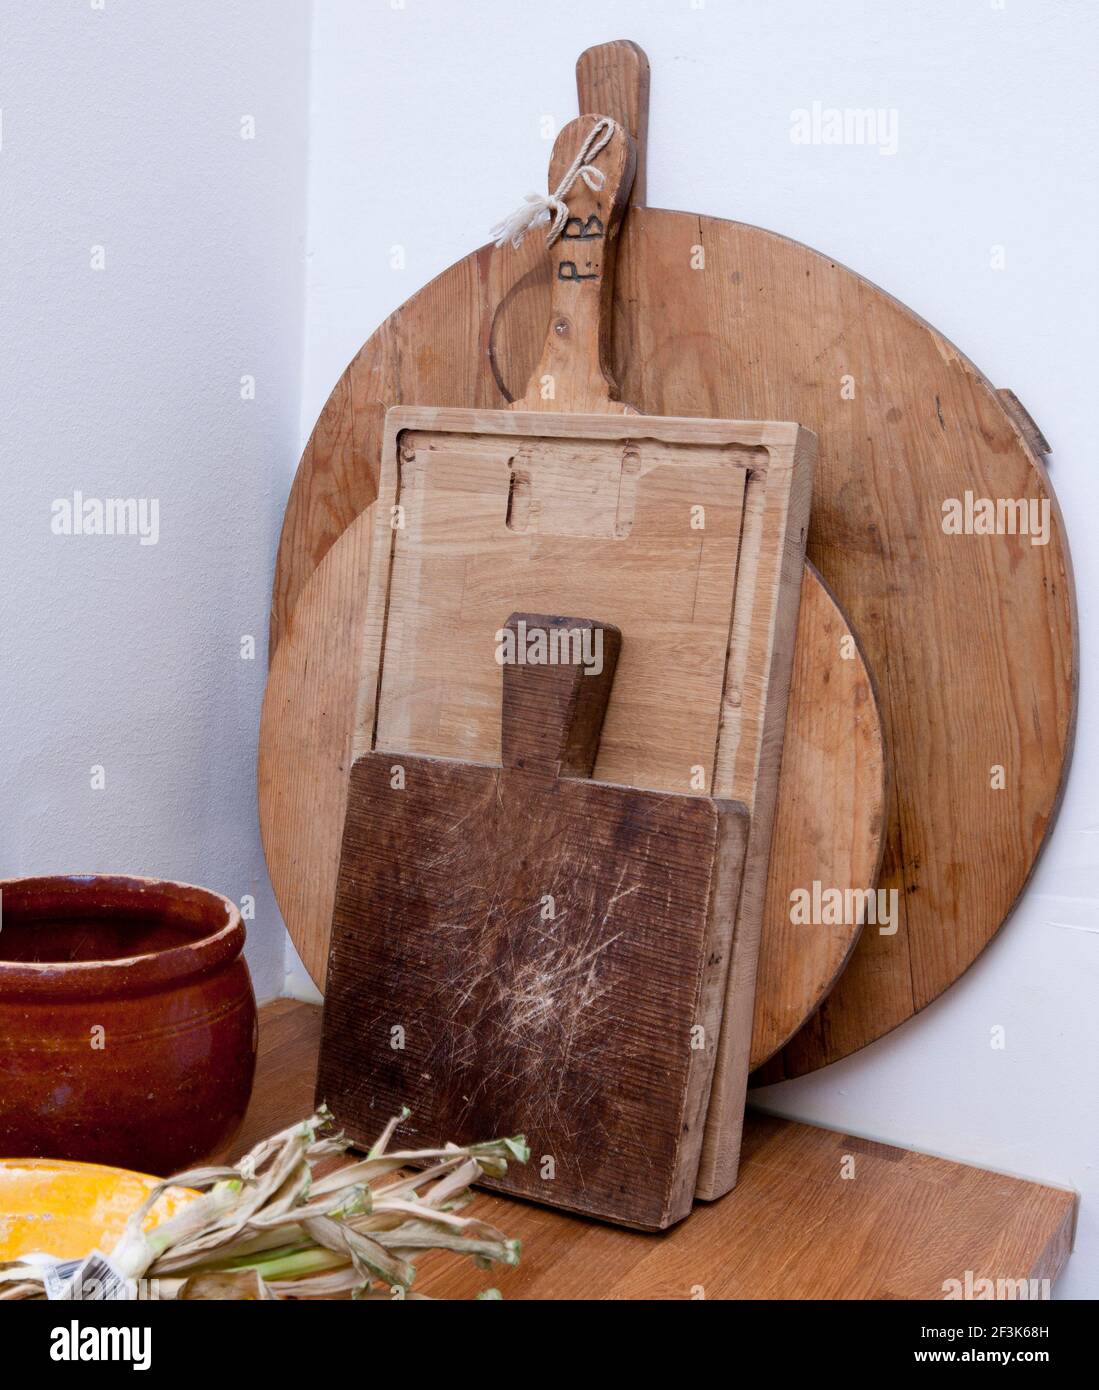 Tablas de madera para picar en el mostrador de la cocina Fotografía de  stock - Alamy